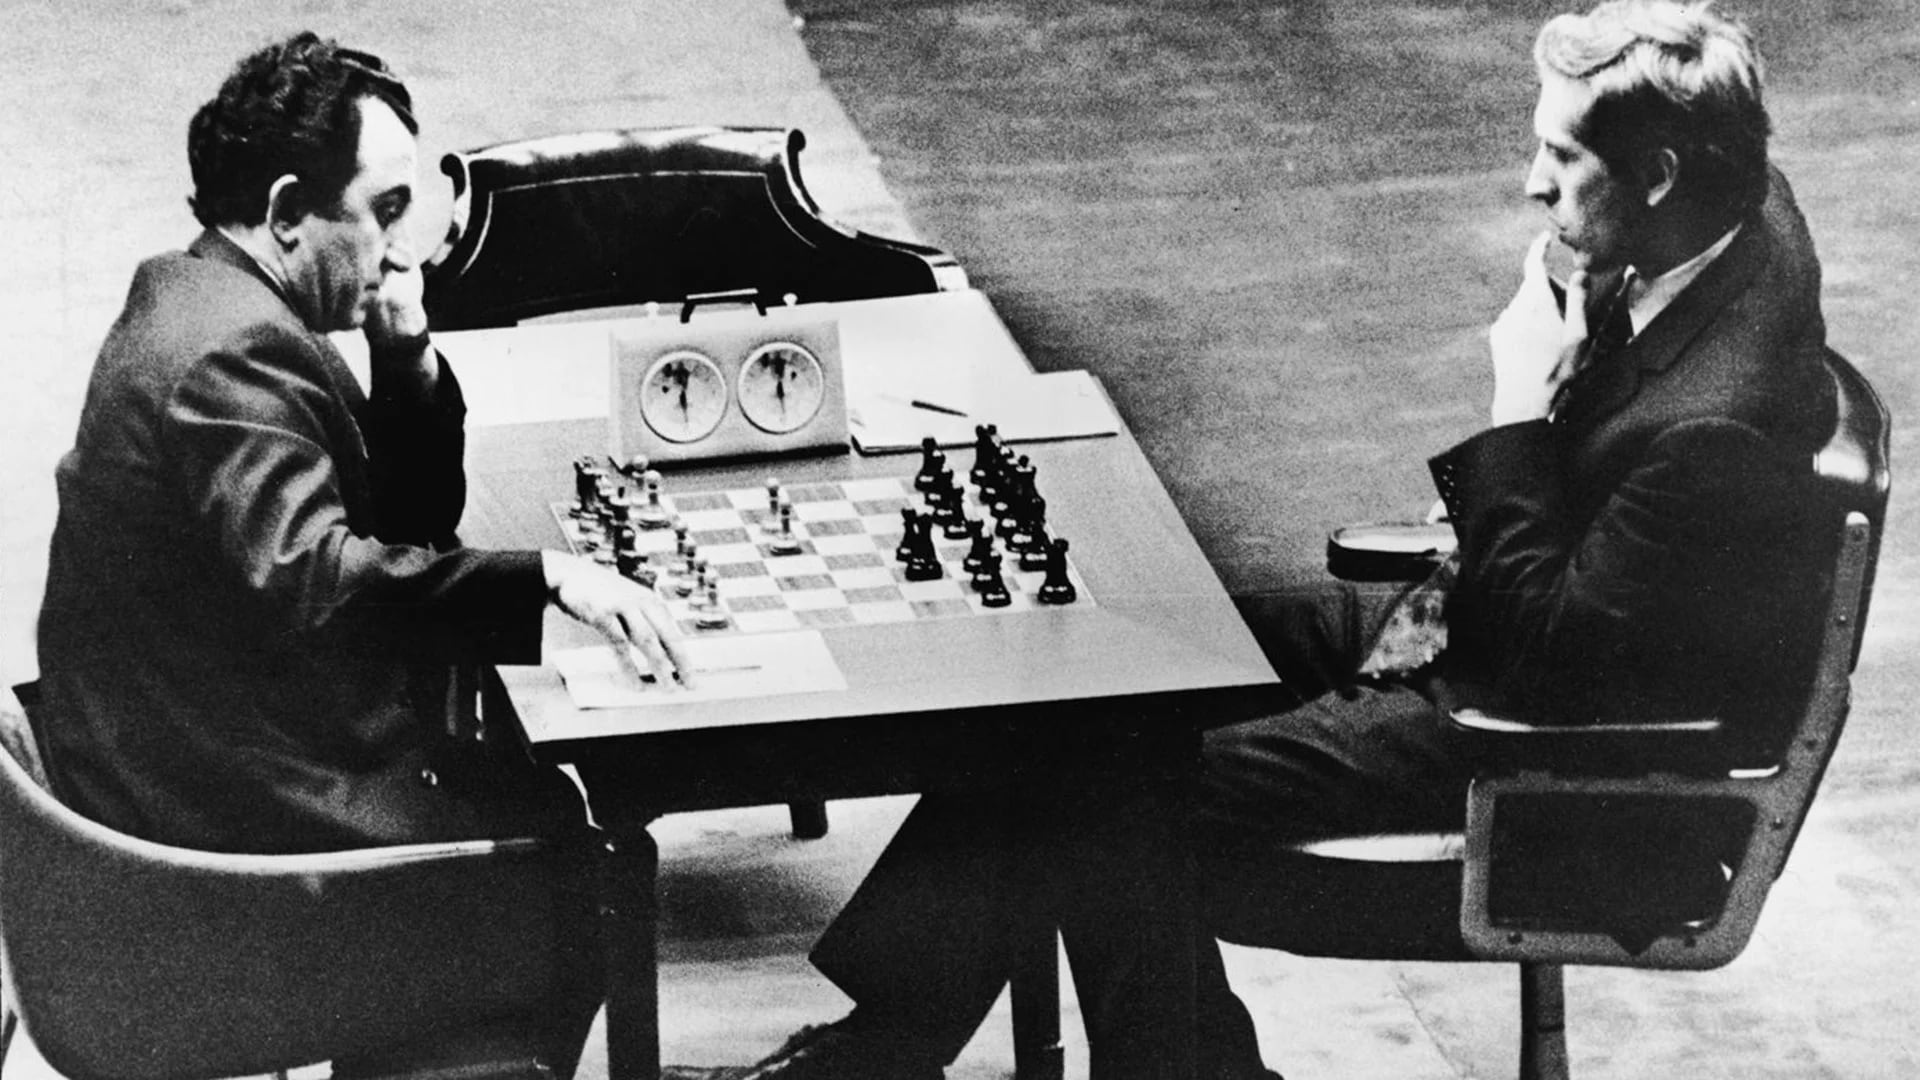 El legandario match entre Bobby Fischer y Boris Spassky en 1972